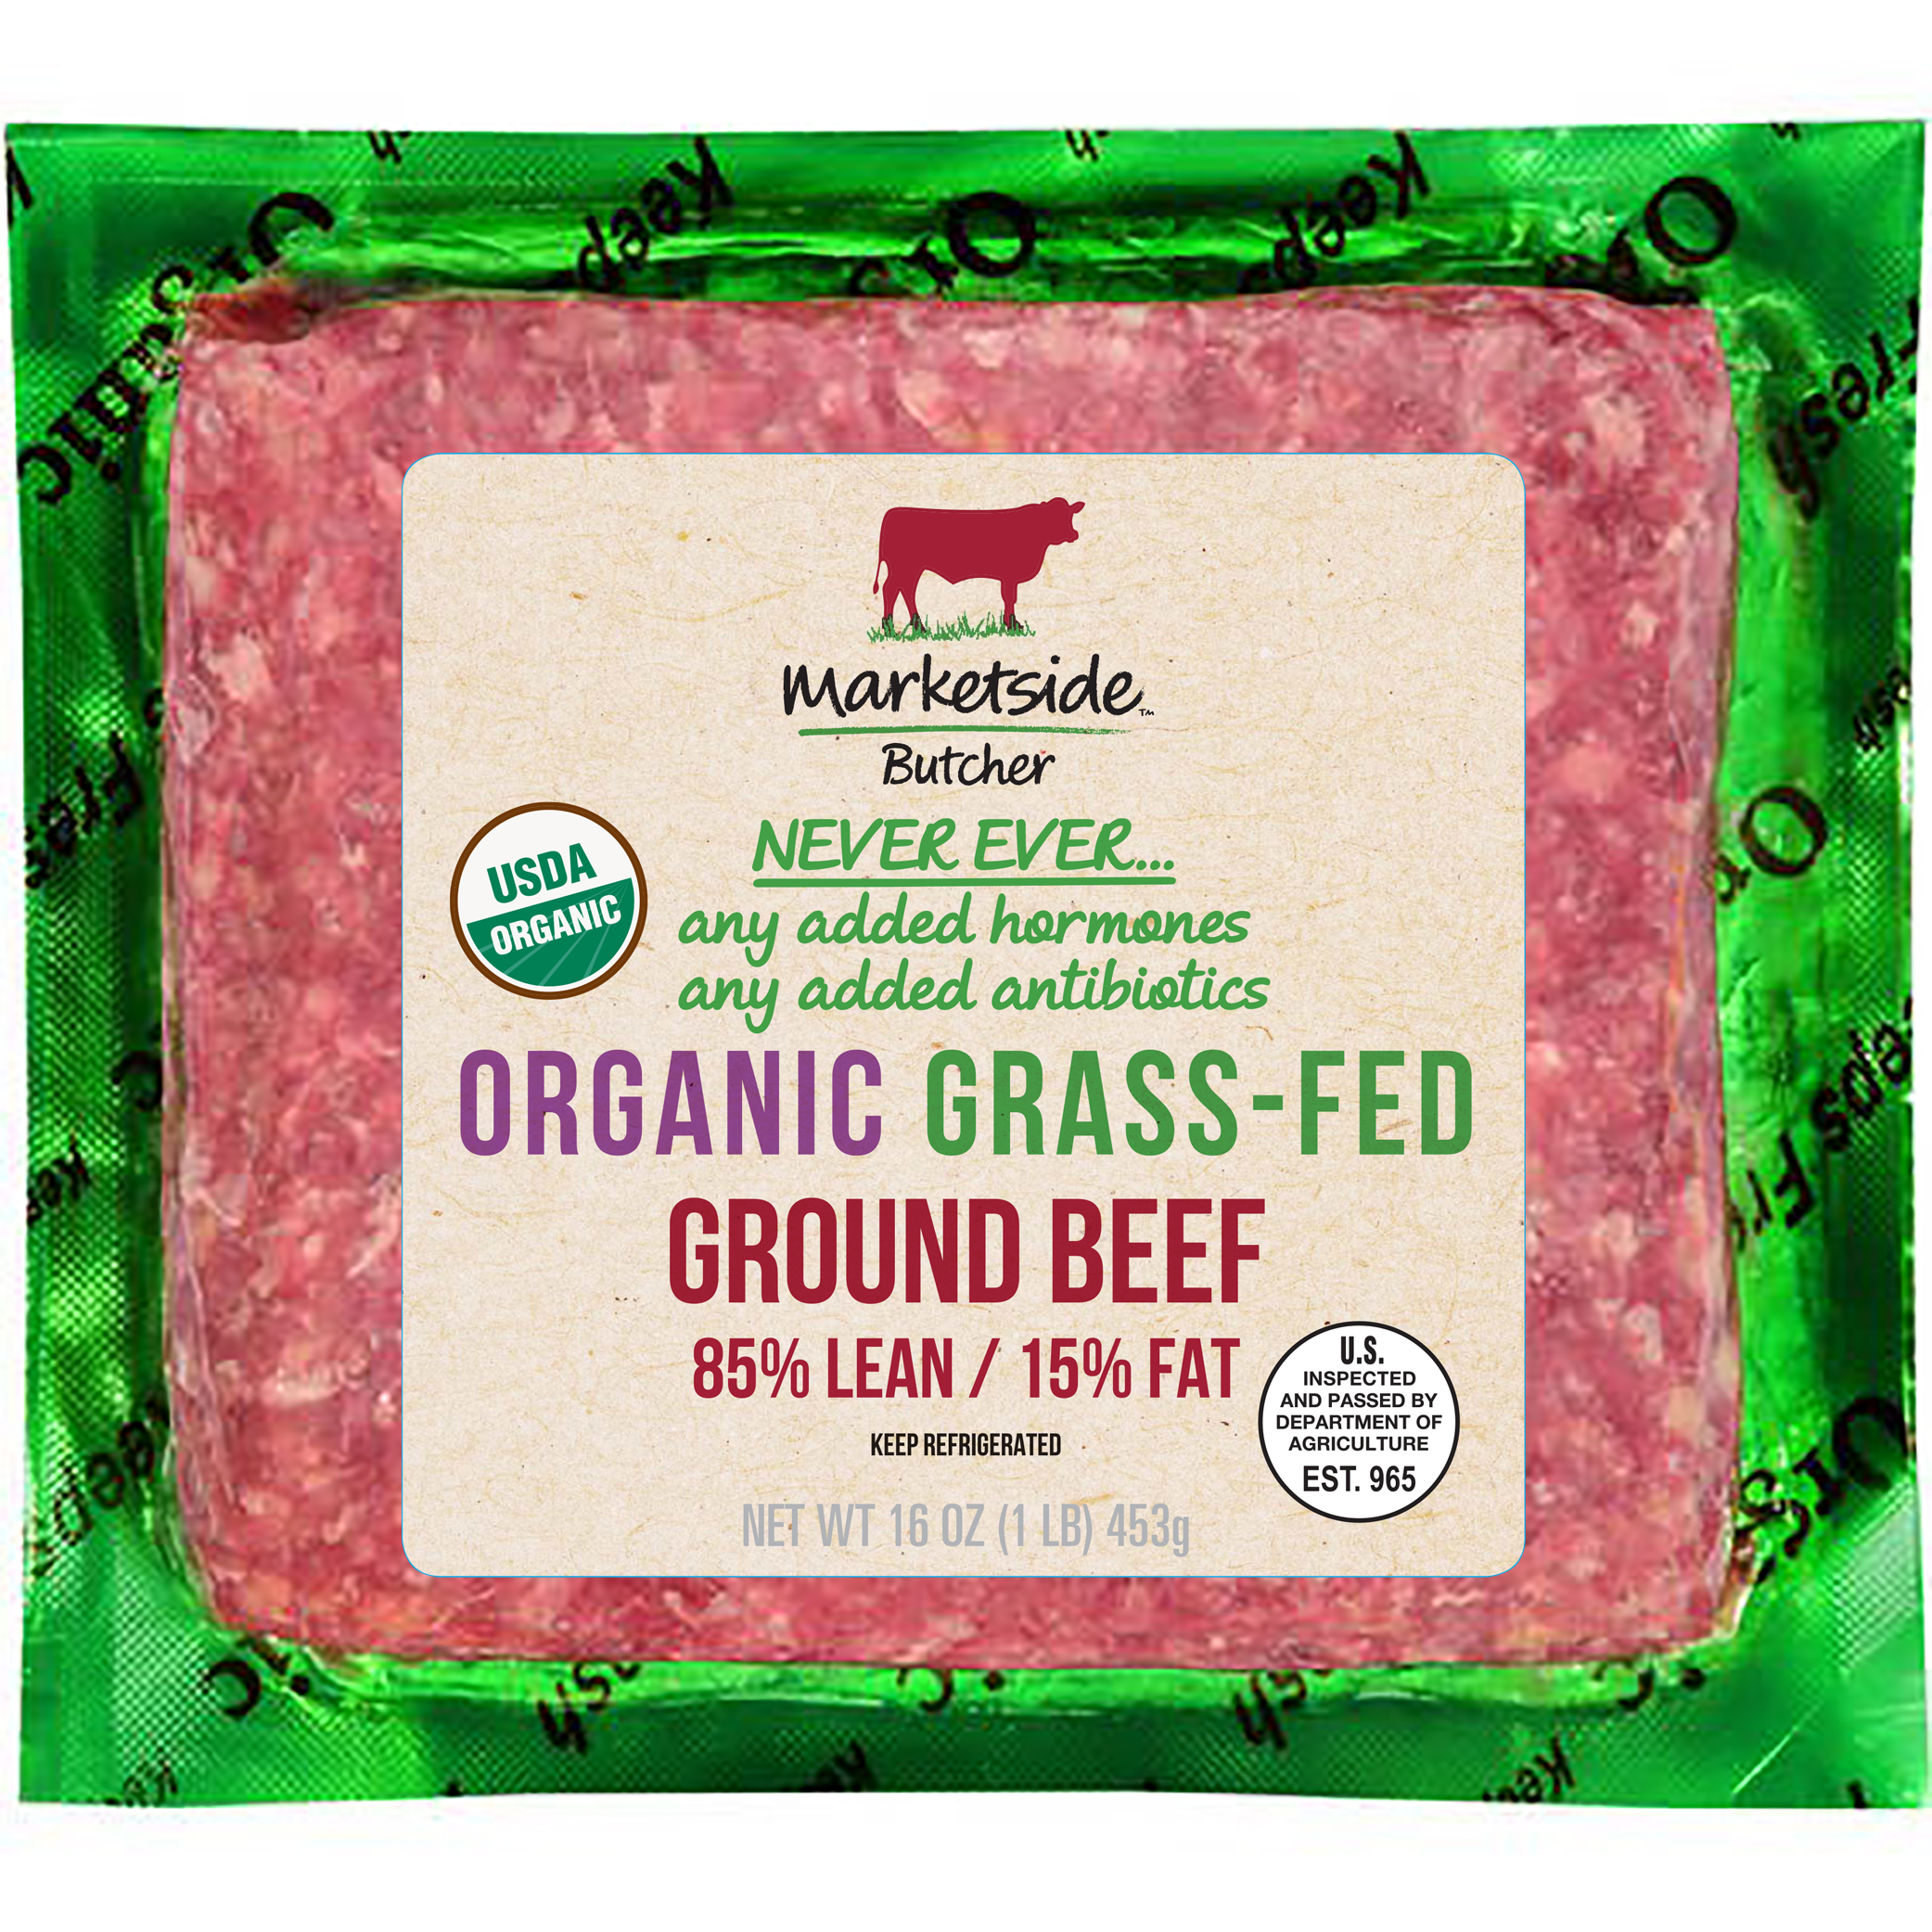 Marketside Butcher Organic Grass-Fed 9% Lean/9% Fat, Ground Beef